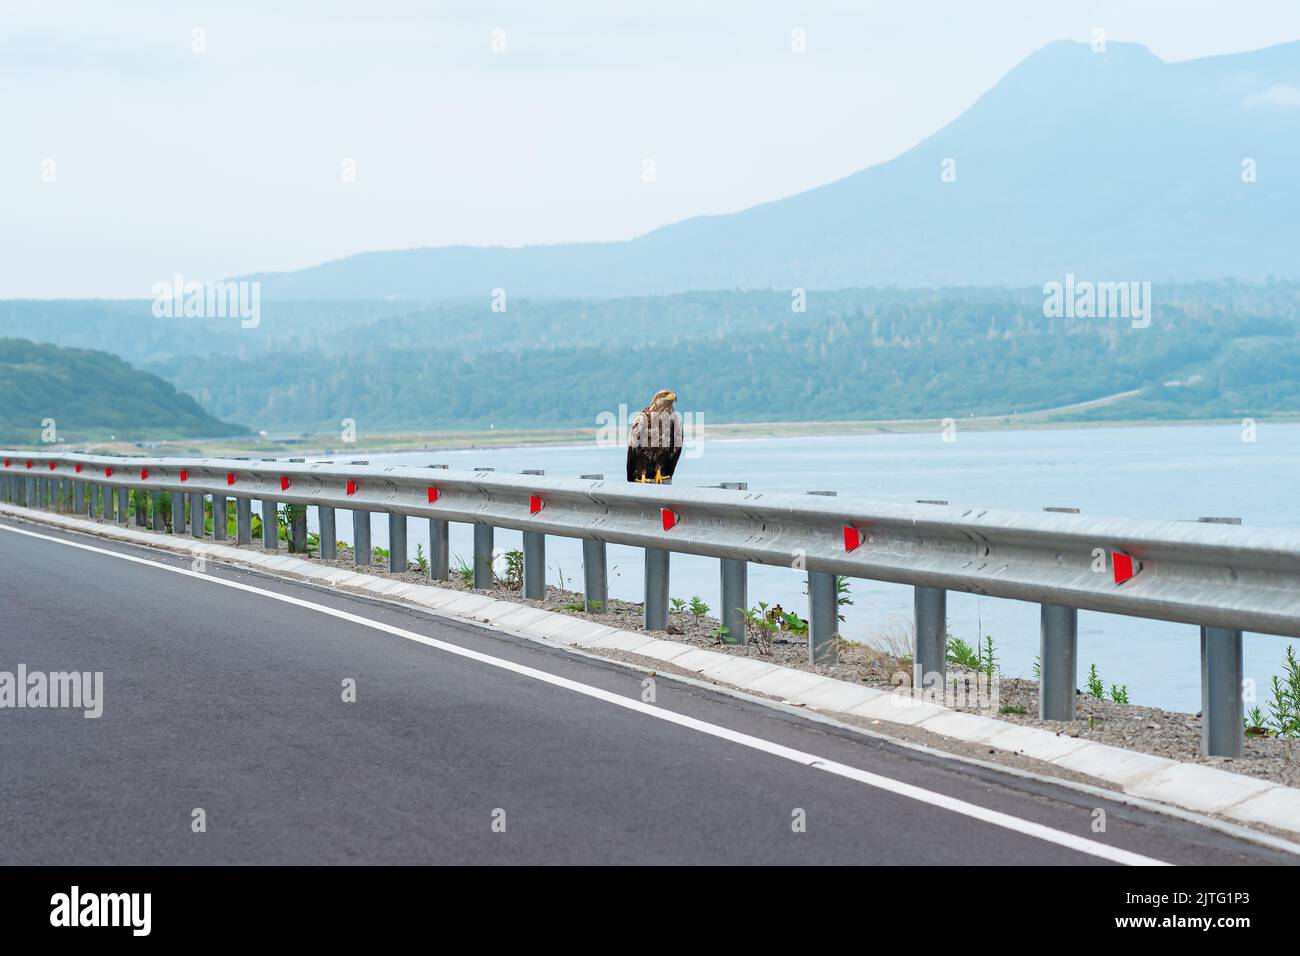 L'aquila di mare grigia si trova su una barriera stradale al limitare di un'autostrada costiera sullo sfondo di una baia nebbiosa, l'isola di Kunashir Foto Stock